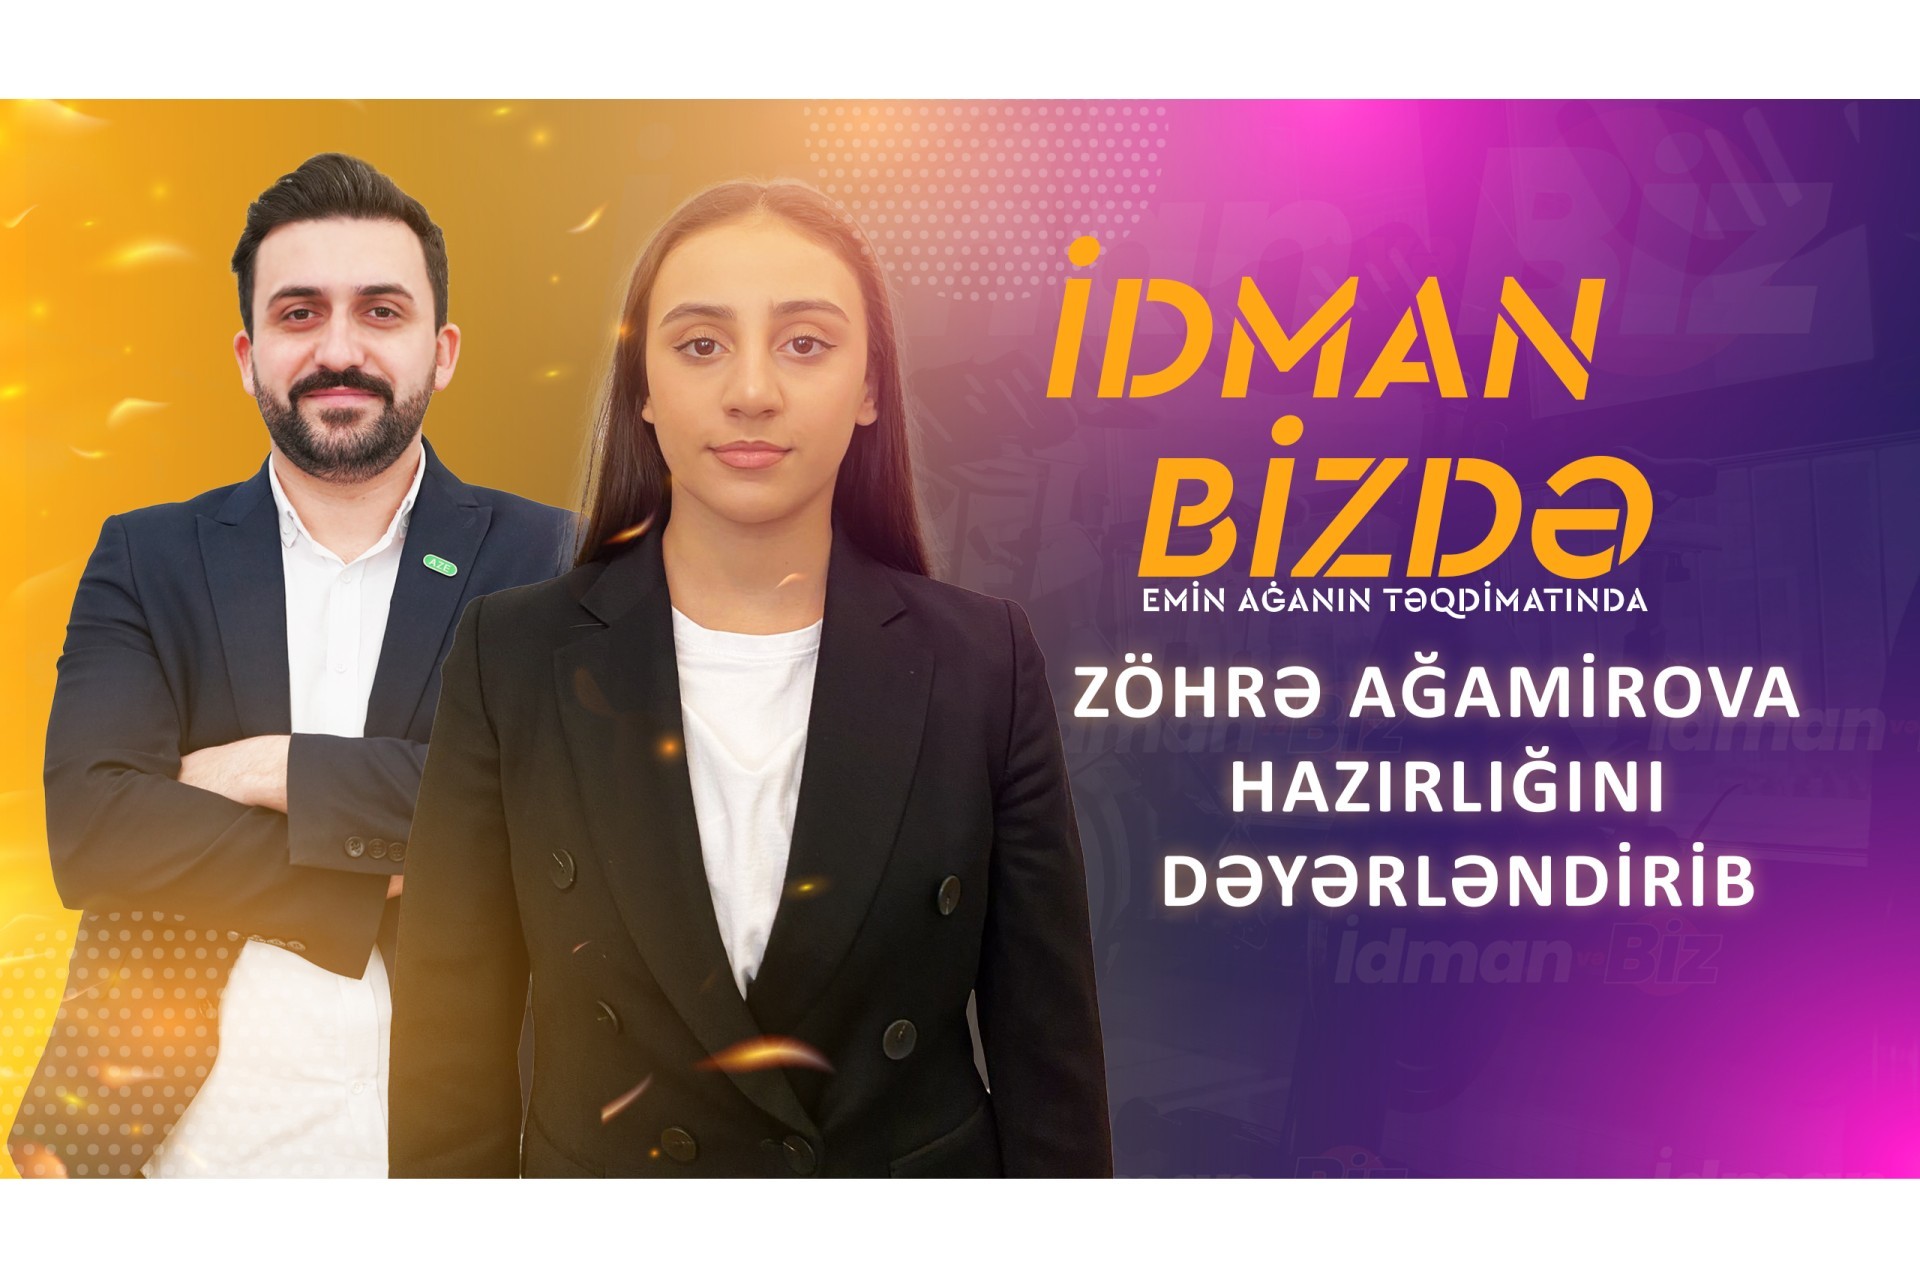 Zöhrə Ağamirova: "Hər 8 martda məşqdə oluram" - İdman.biz TV - VİDEO